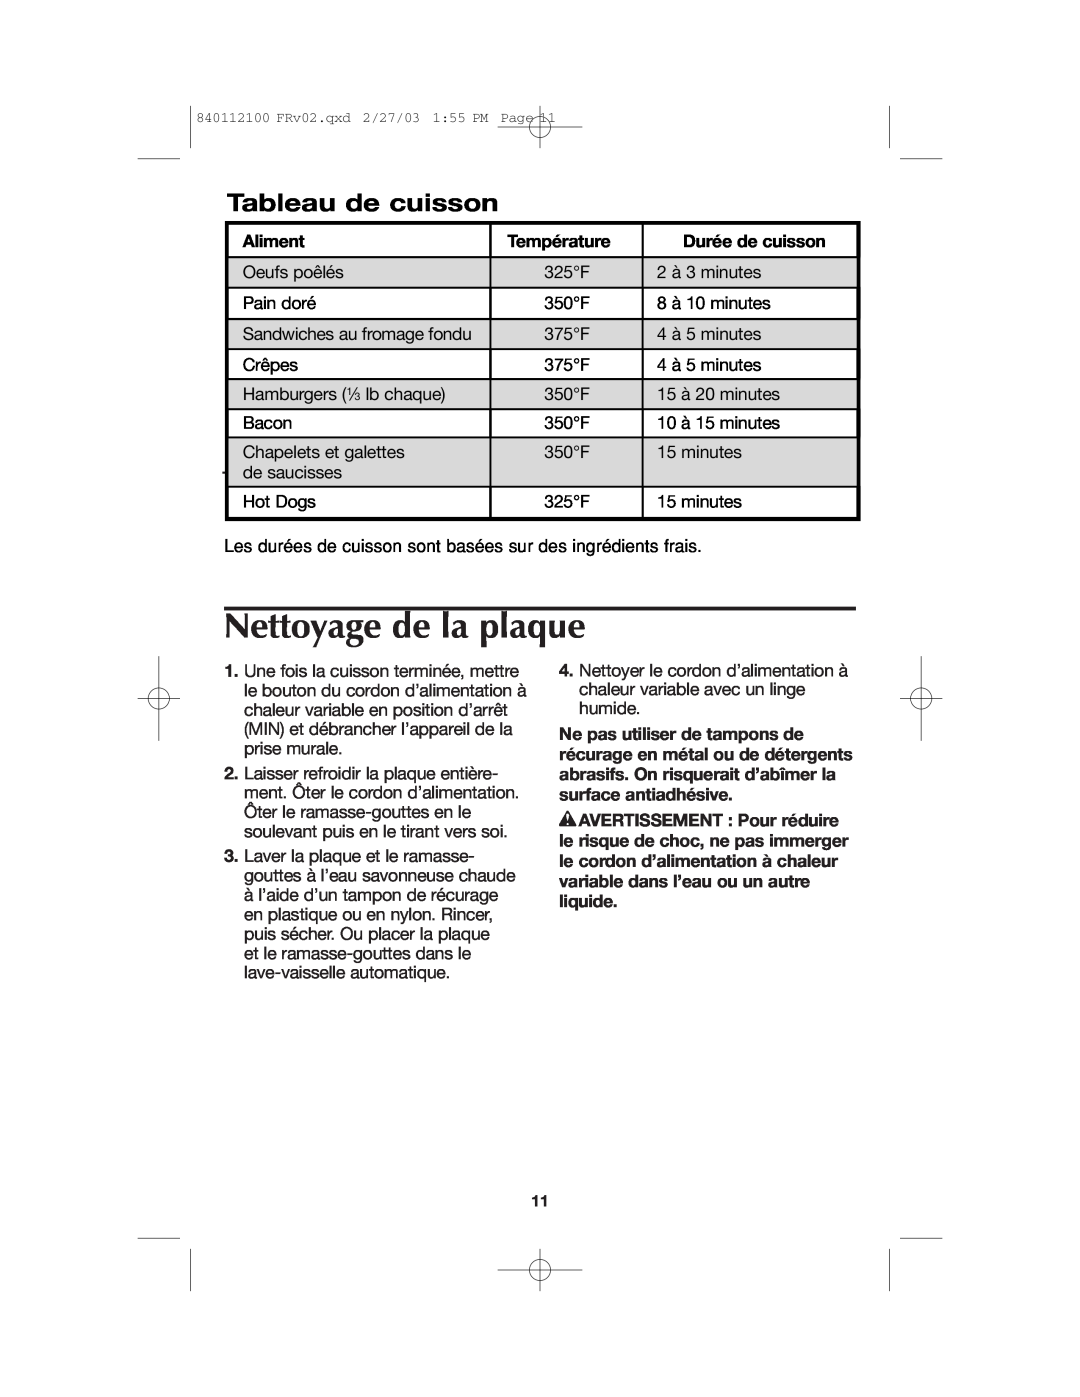 Proctor-Silex 840112100 manual Nettoyage de la plaque, Tableau de cuisson, Aliment, Température, Durée de cuisson 